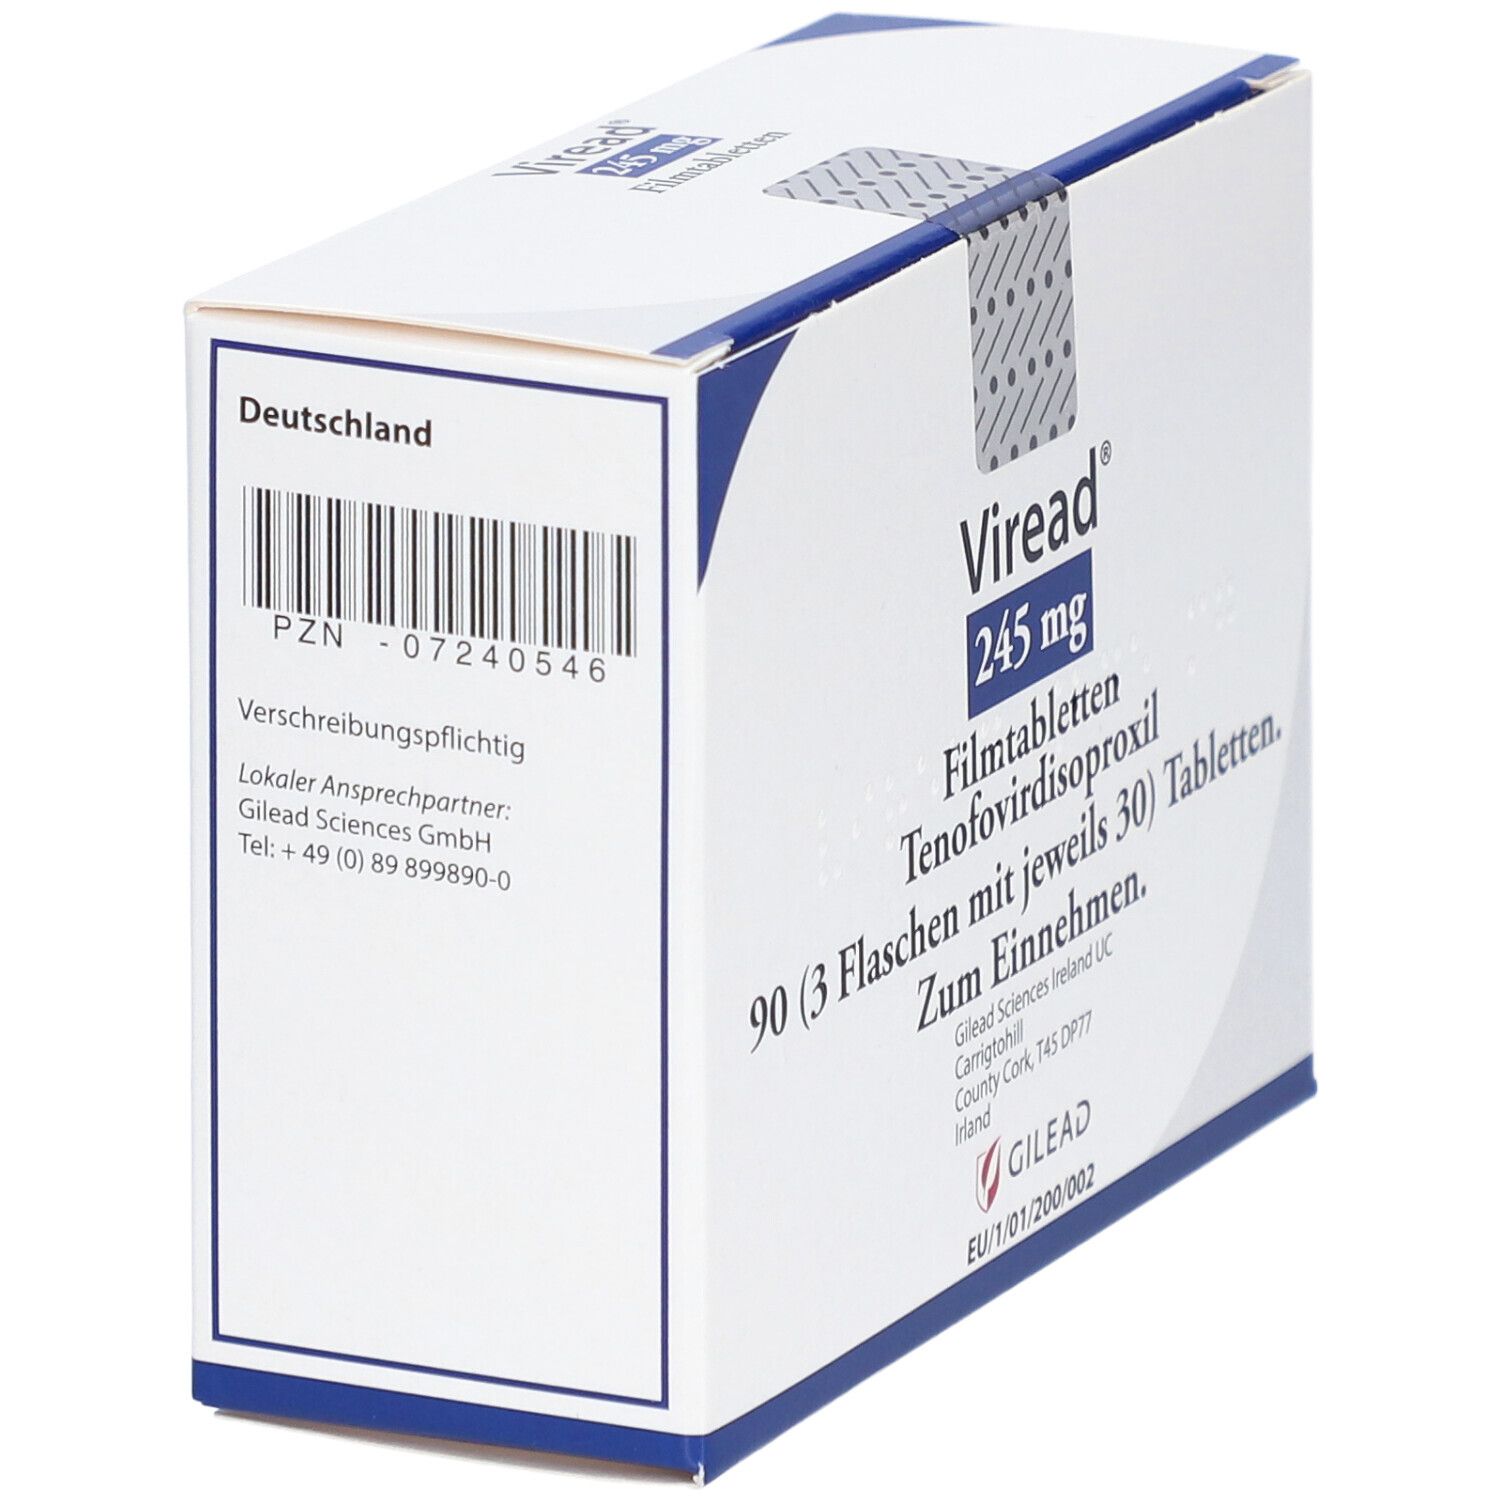 Viread® 245 mg